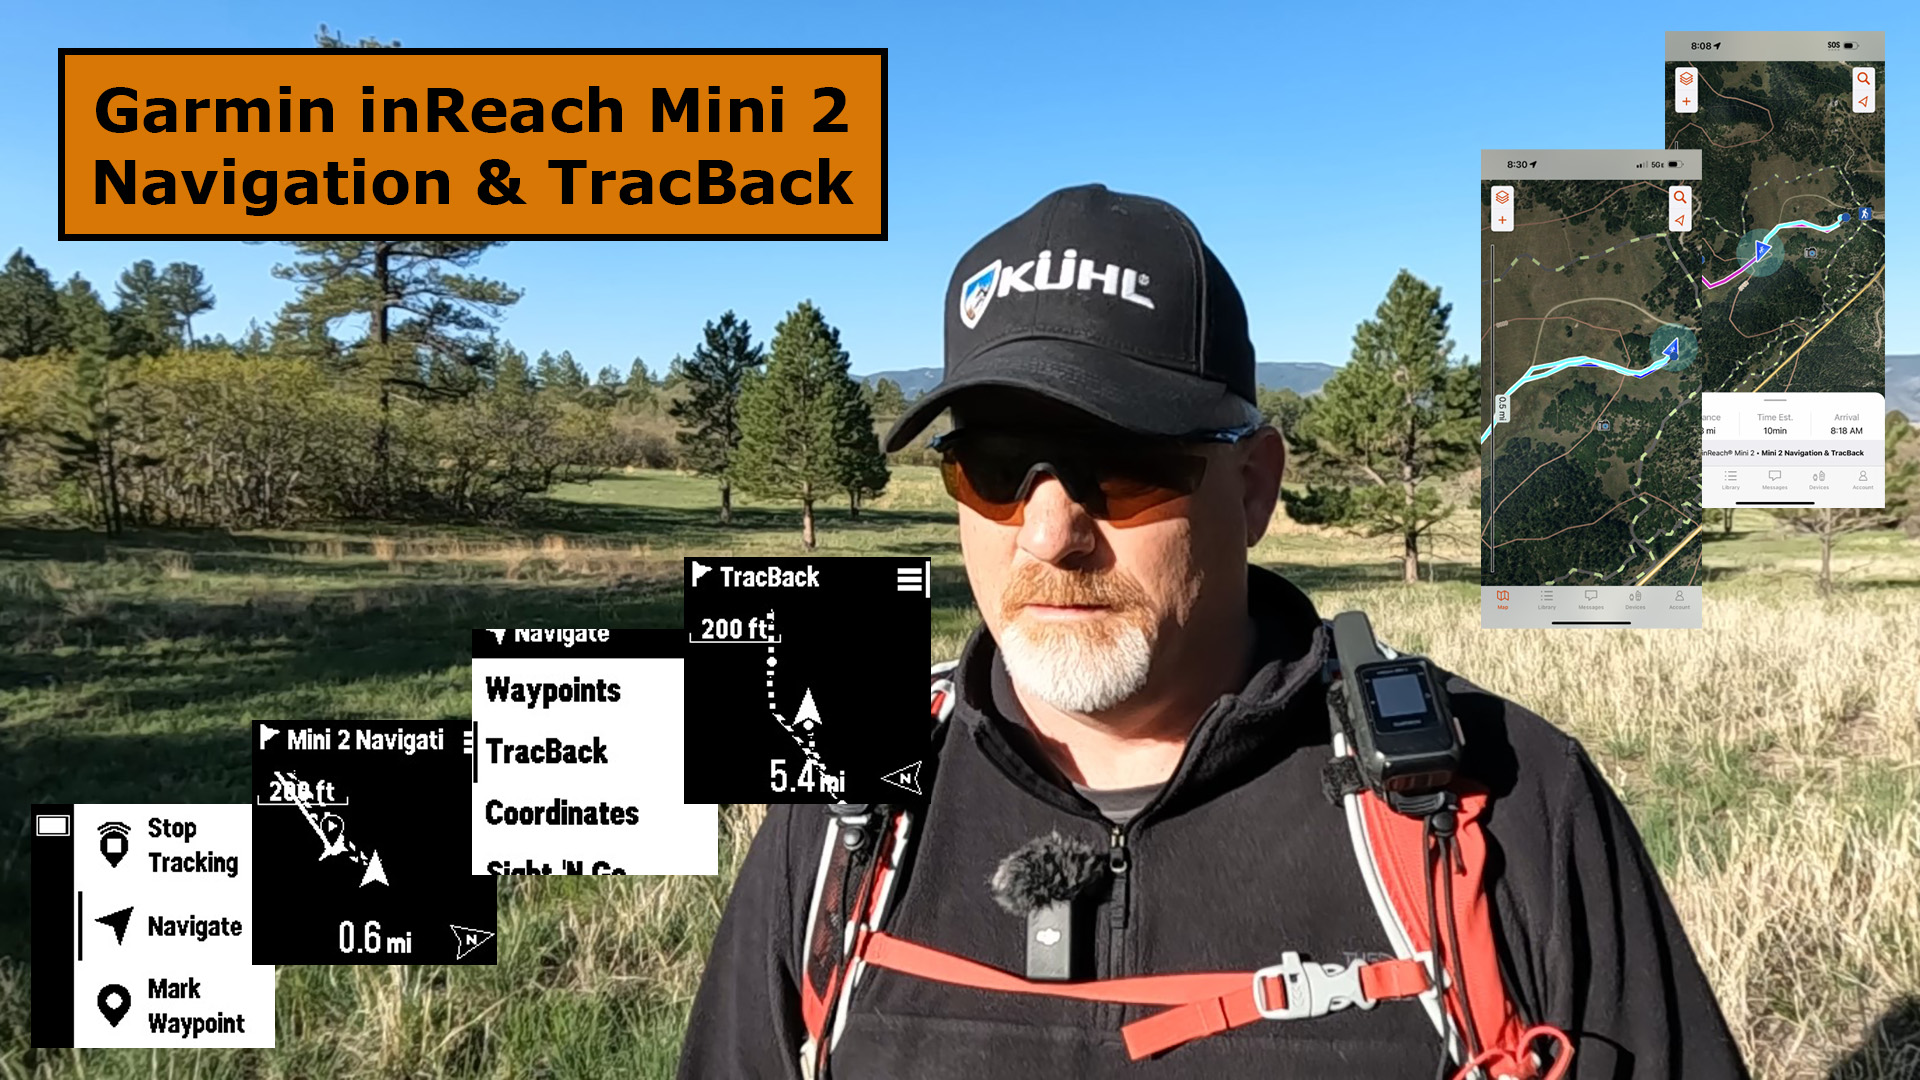 Garmin inReach Mini 2 Navigation & TracBack